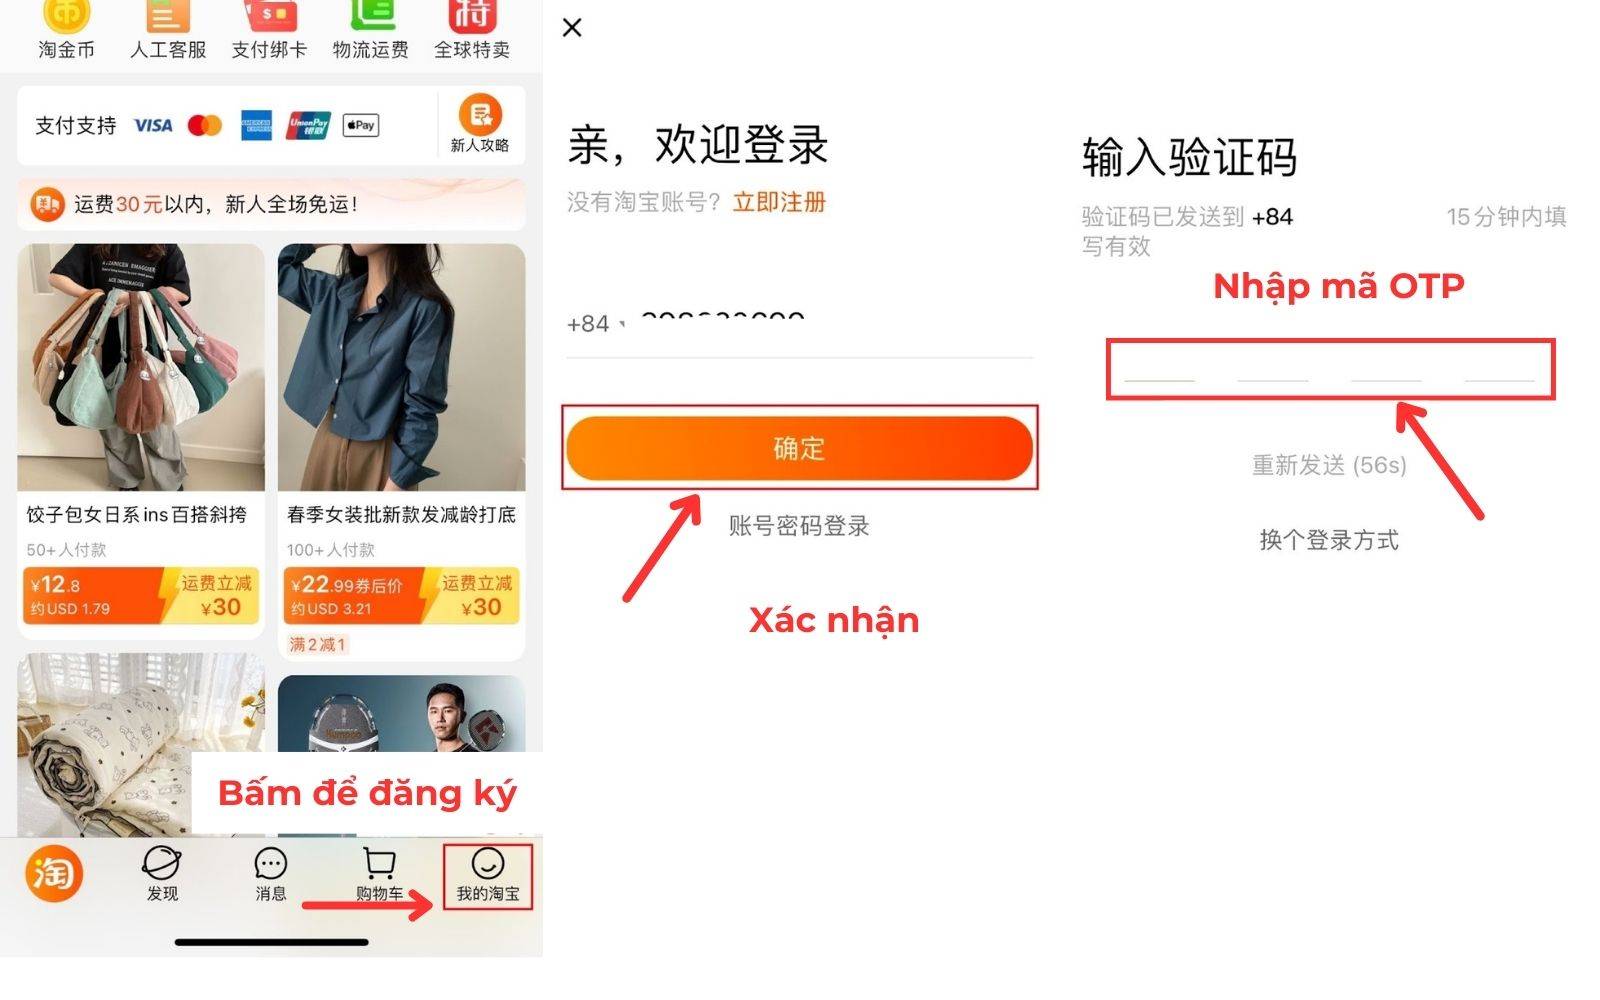 Bước đầu để đăng ký tài khoản mua hàng hóa trên Taobao.com